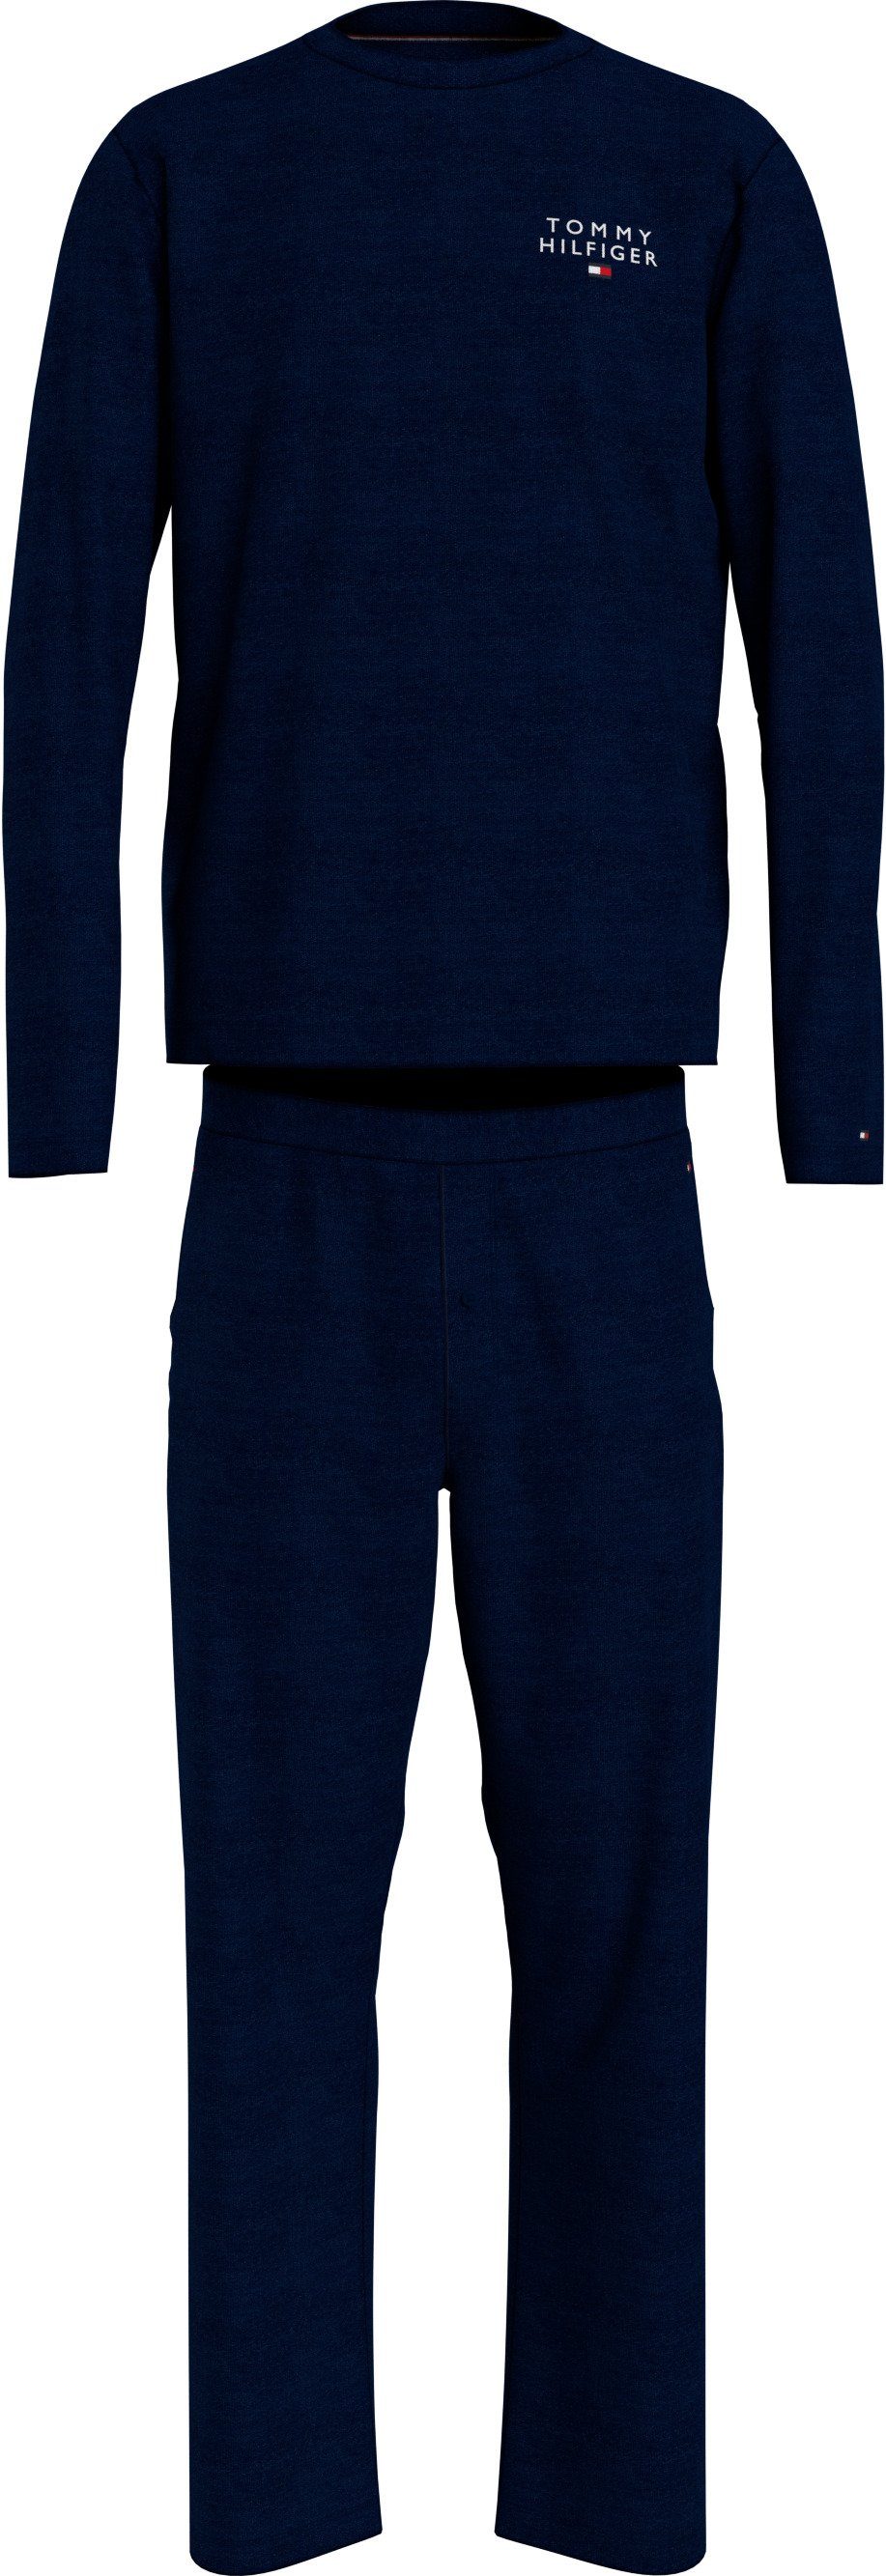 Tommy Hilfiger Herren Pyjama-Sets online kaufen | OTTO